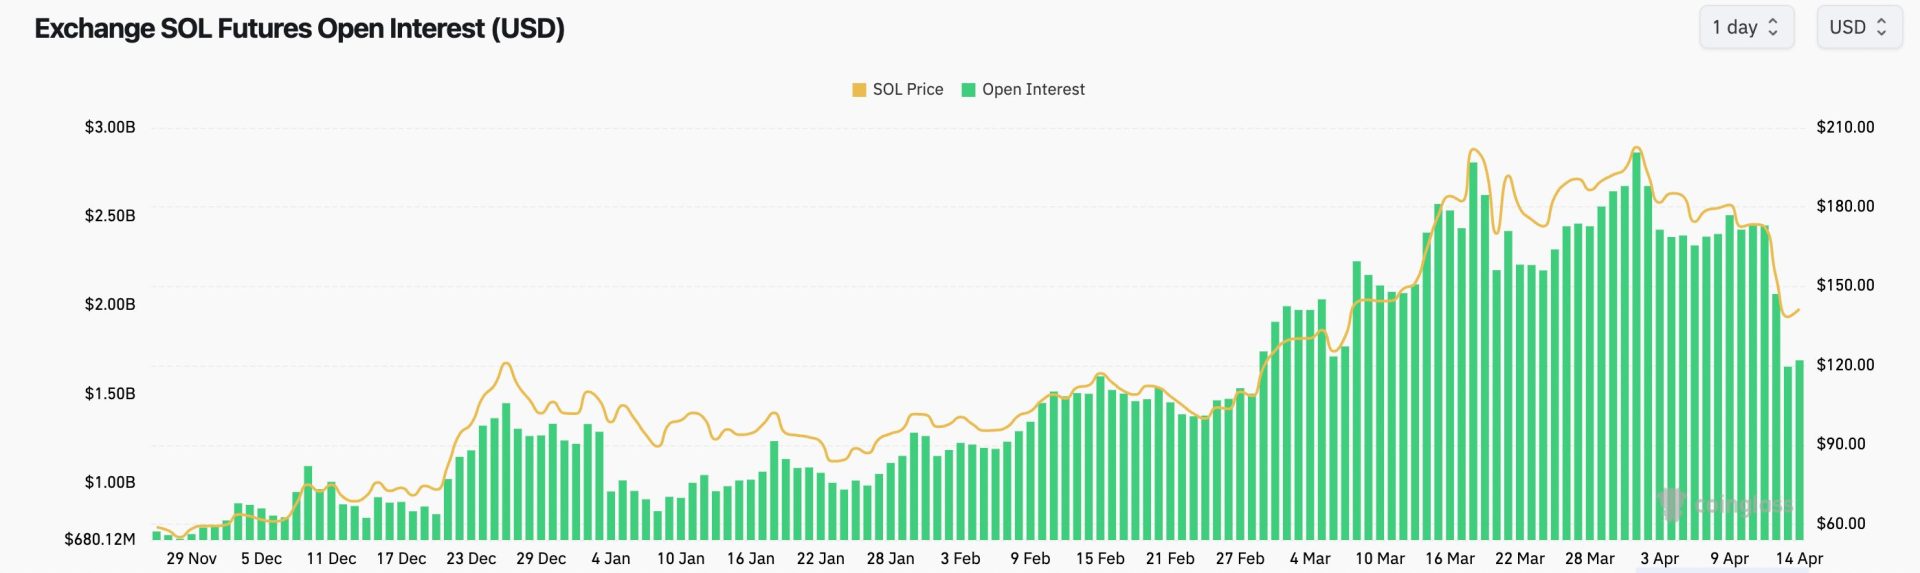 Lãi suất mở hợp đồng tương lai Solana đạt mức cao nhất trong năm vào đầu tháng này. Nguồn: CoinGlass